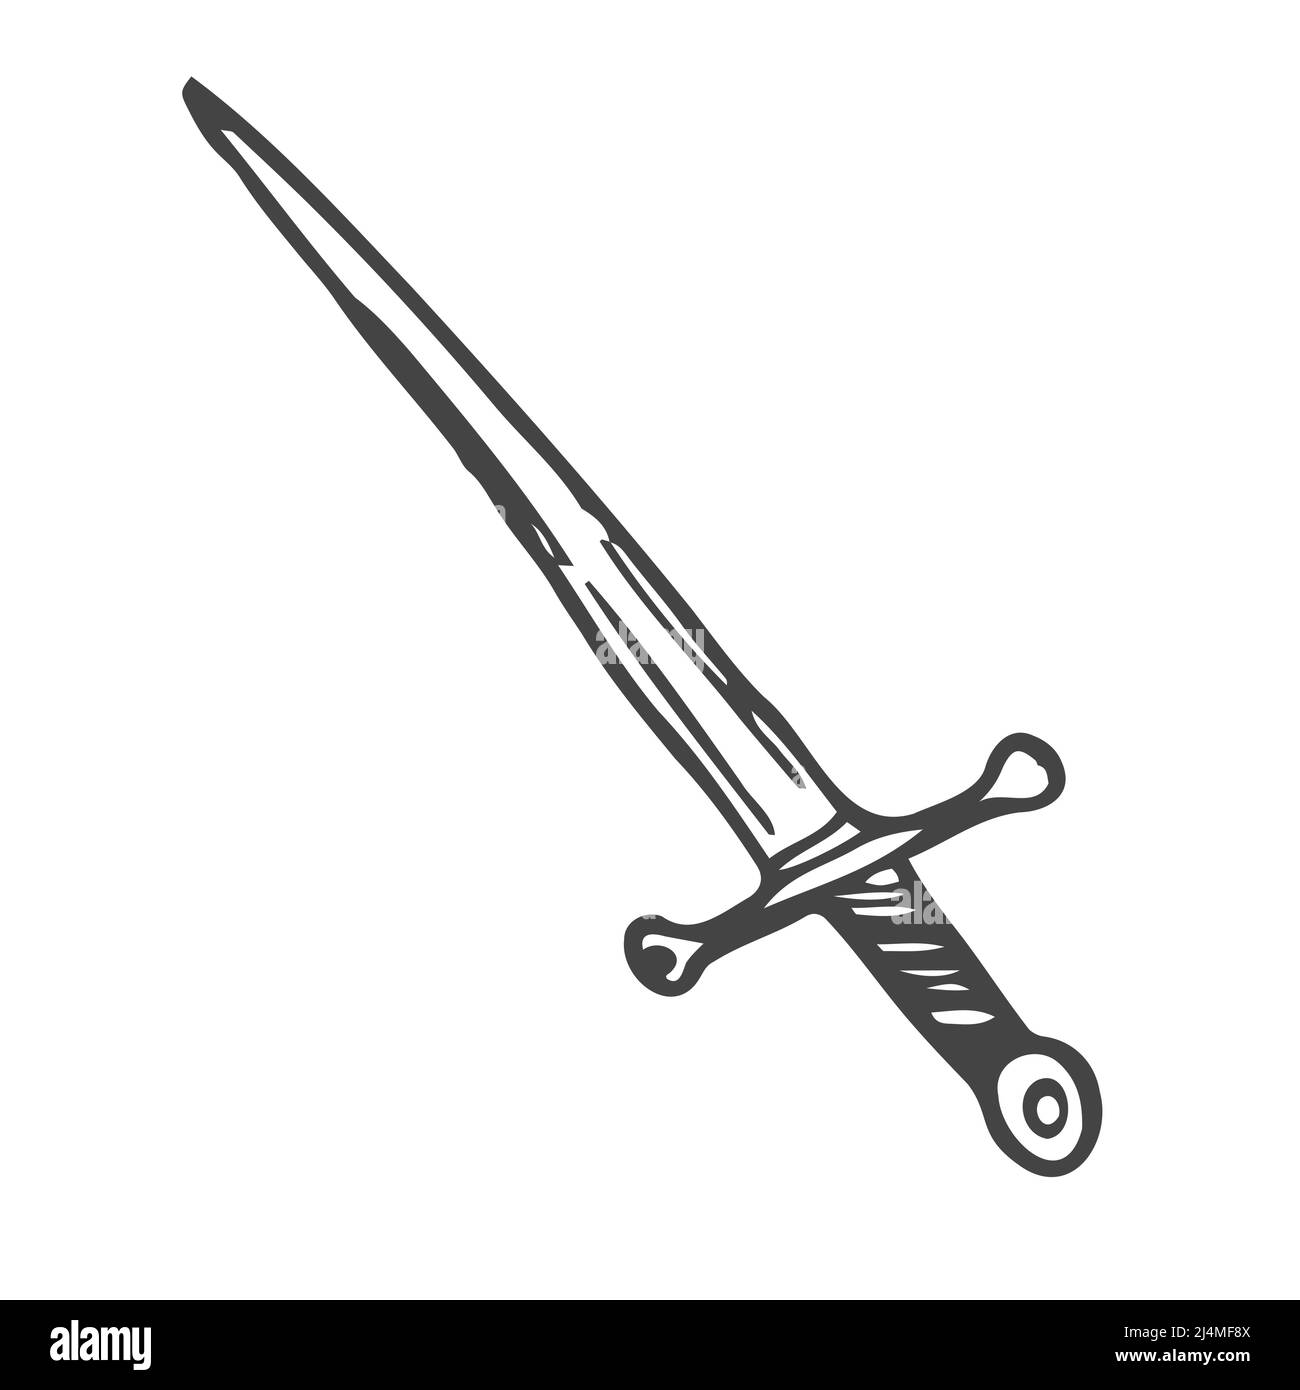 Ein Schwert mit einem Griff im Doodle-Stil gezeichnet.Umriss Zeichnung von  Hand.Kalter Stahl.Dolch.Schwarz-Weiß-Bild Stock-Vektorgrafik - Alamy